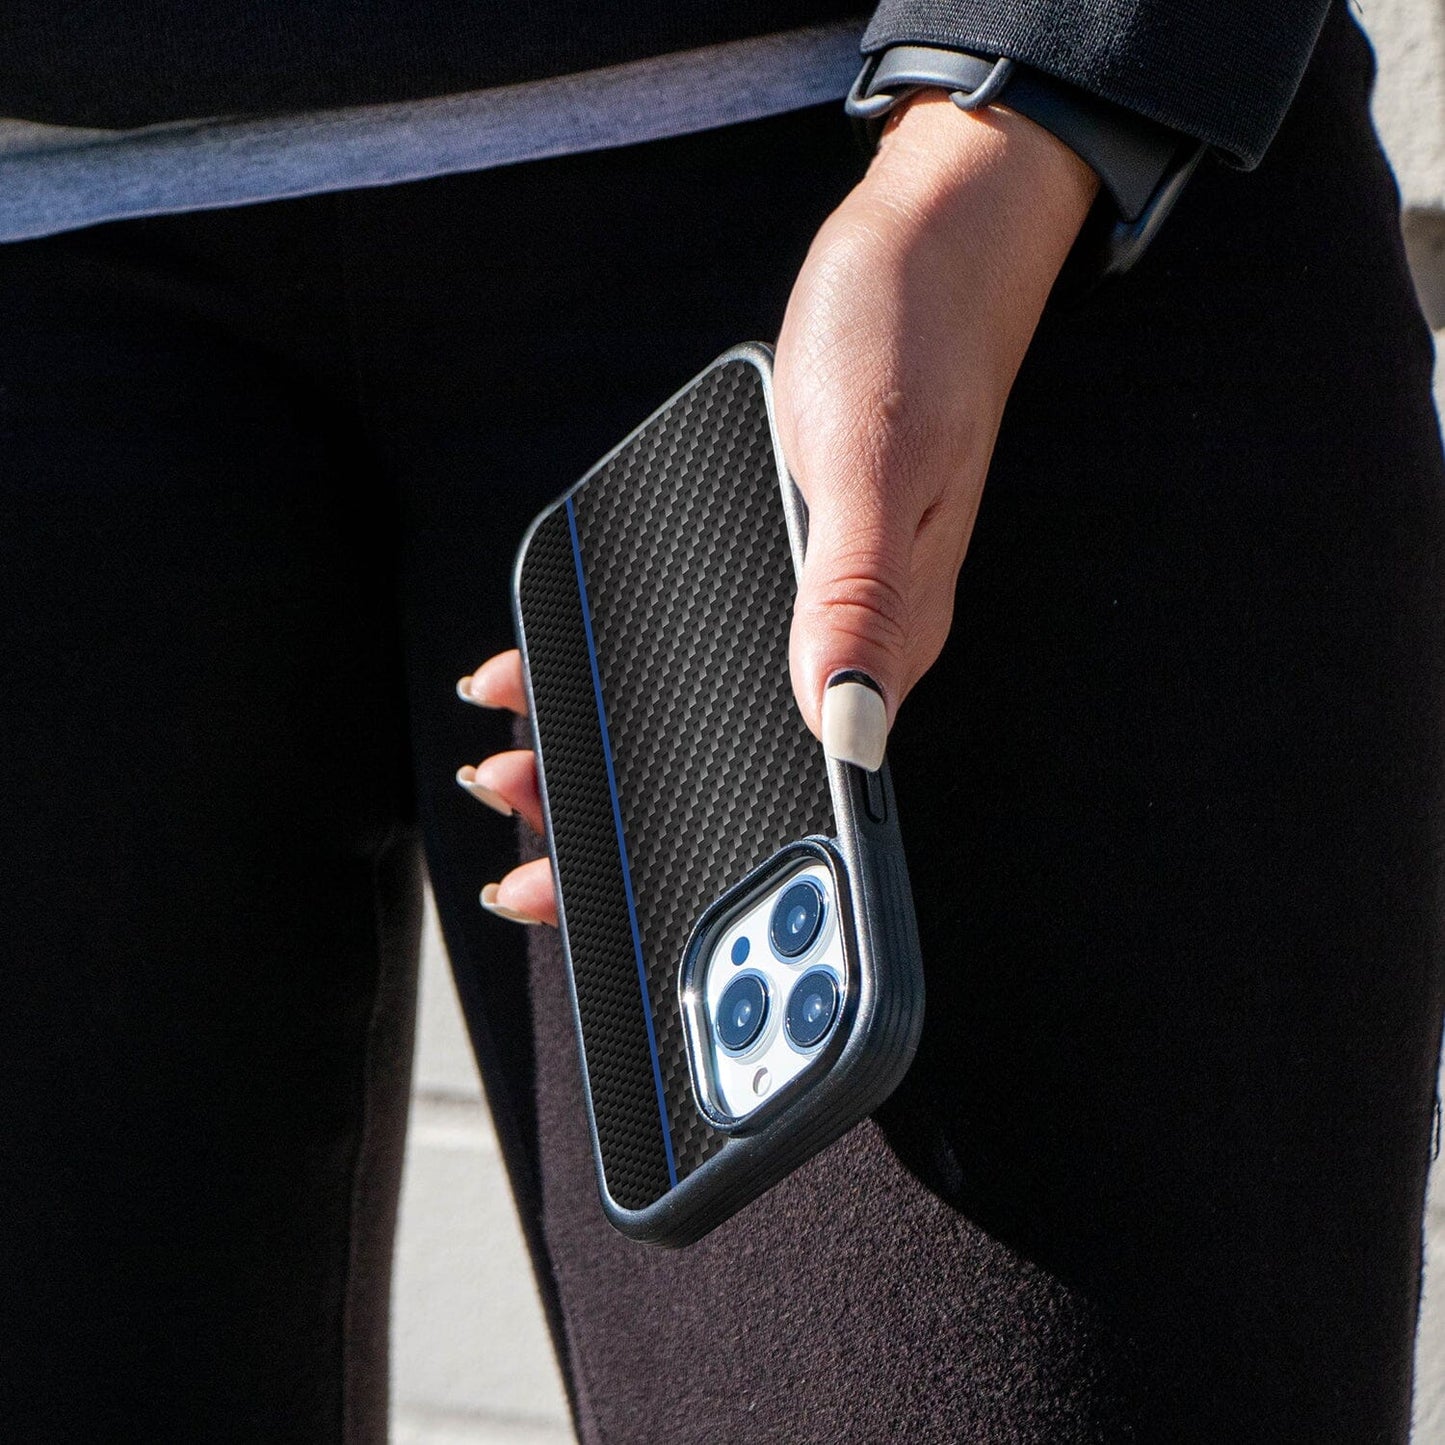 iPhone 13 Pro Blue Line Design Fremont Grip Case Black Carbon Fiber with MagSafe (On Hand)